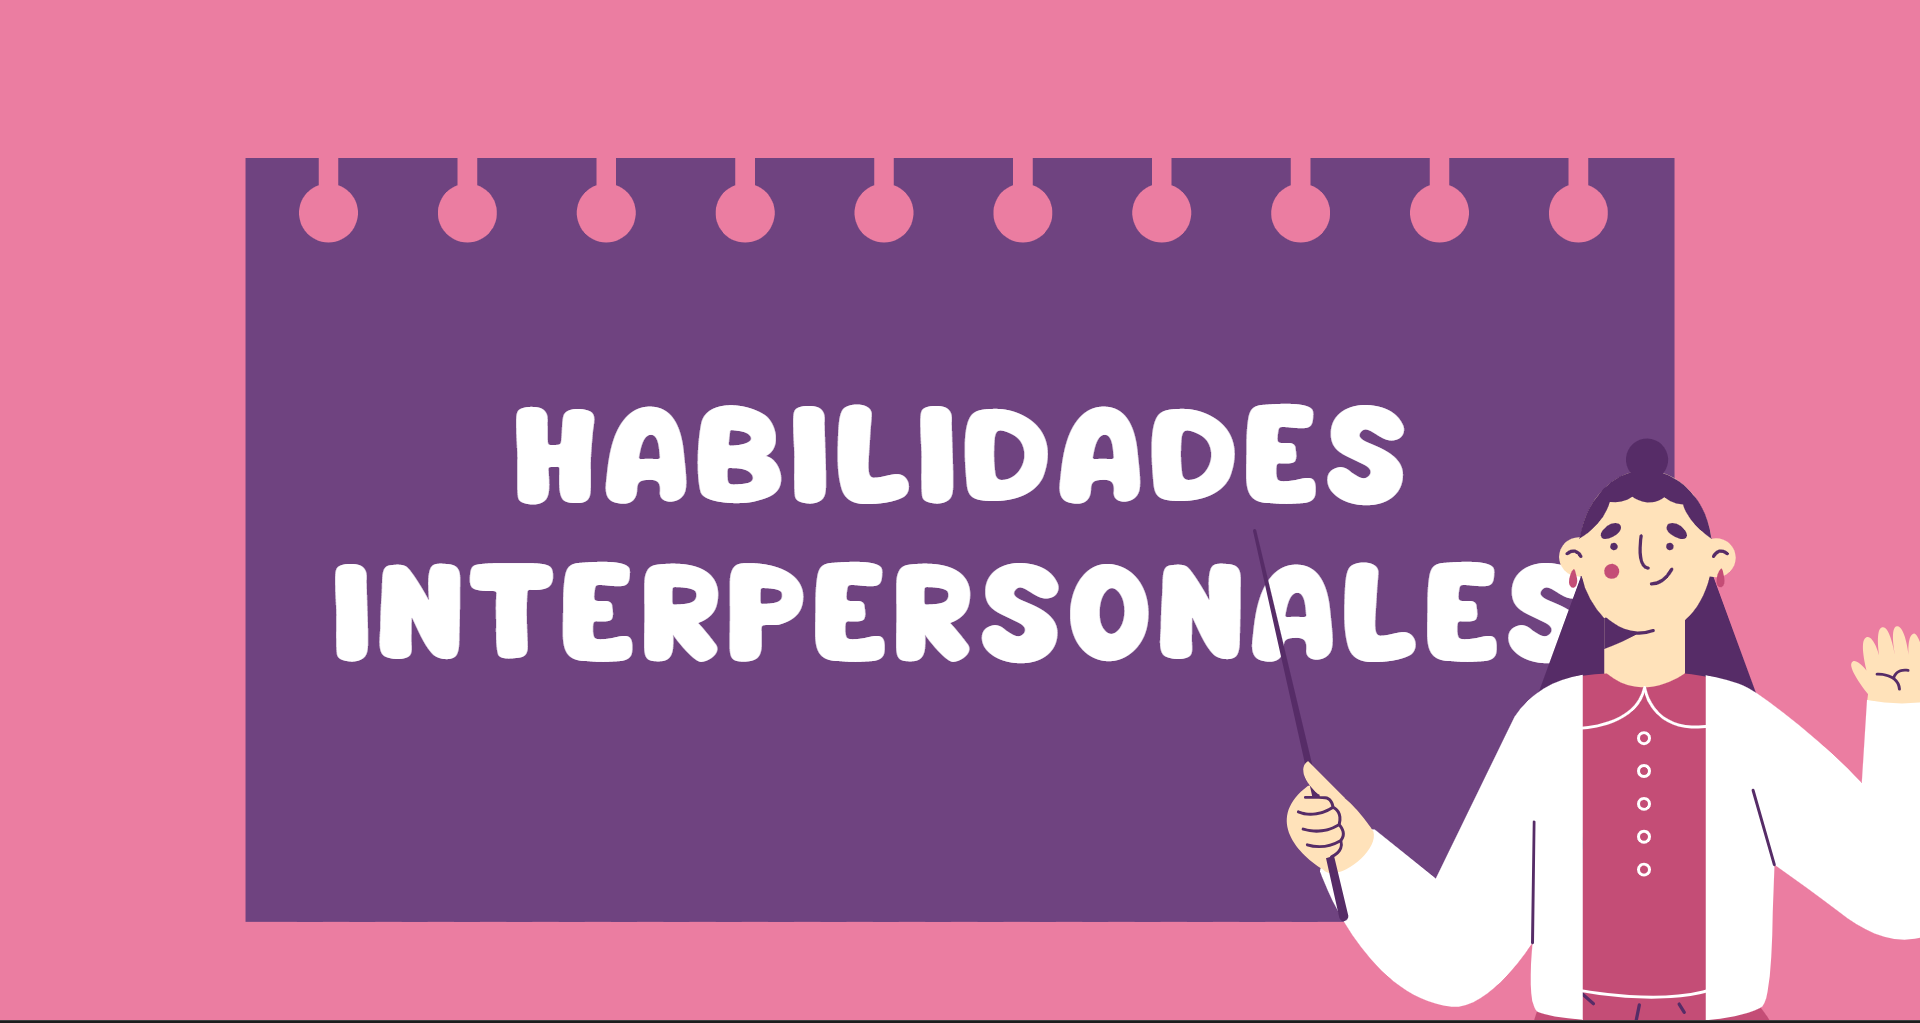 HABILIDADES INTERPERSONALES HI2